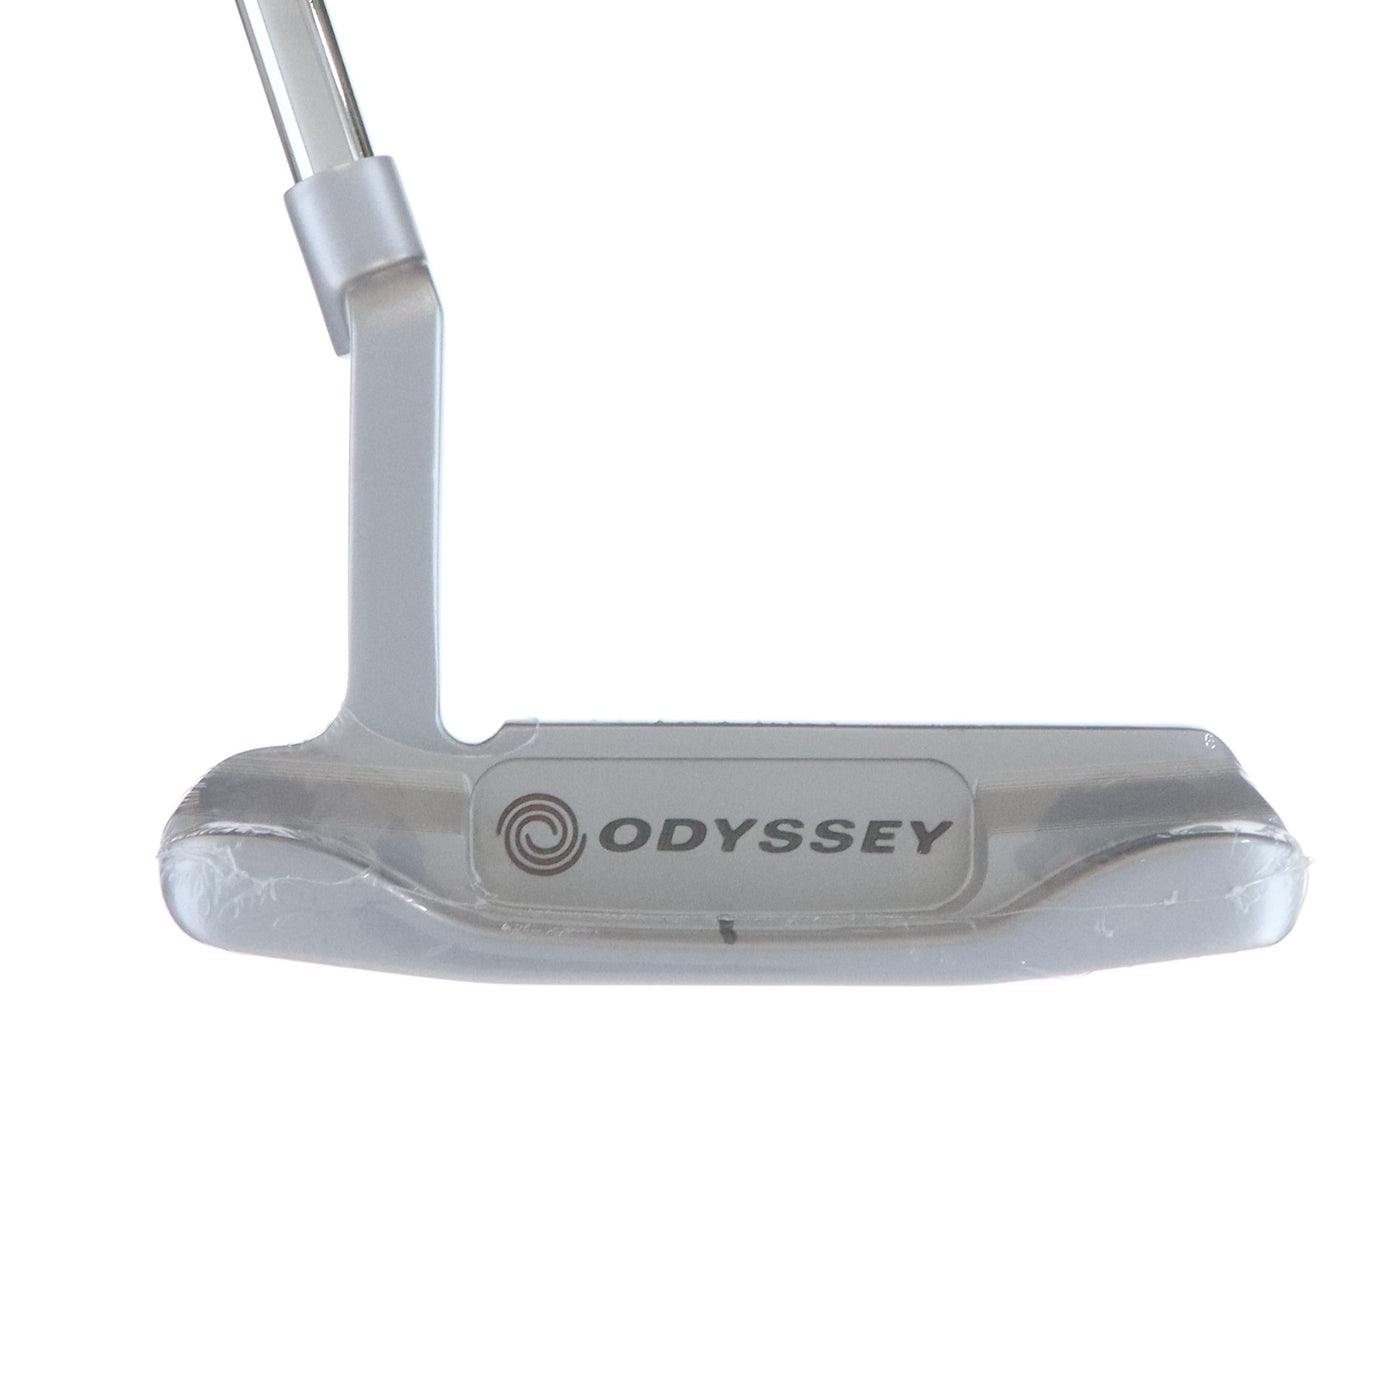 Odyssey Putter Brand New WHITE HOT OG #1 34 inch